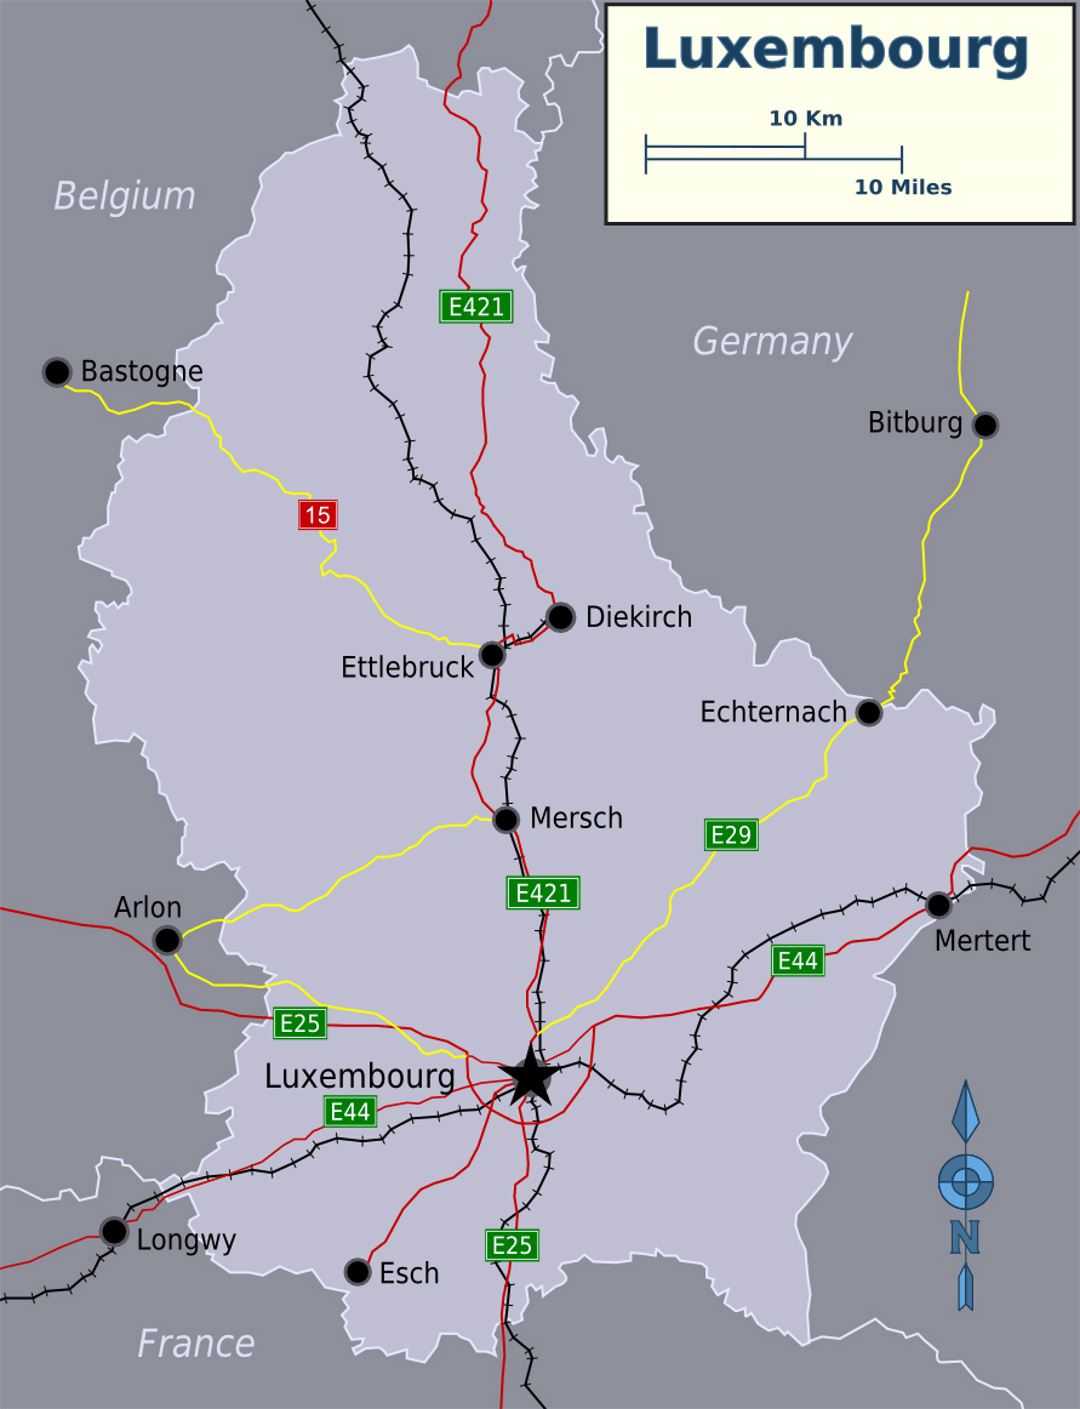 Detallado mapa de Luxemburgo